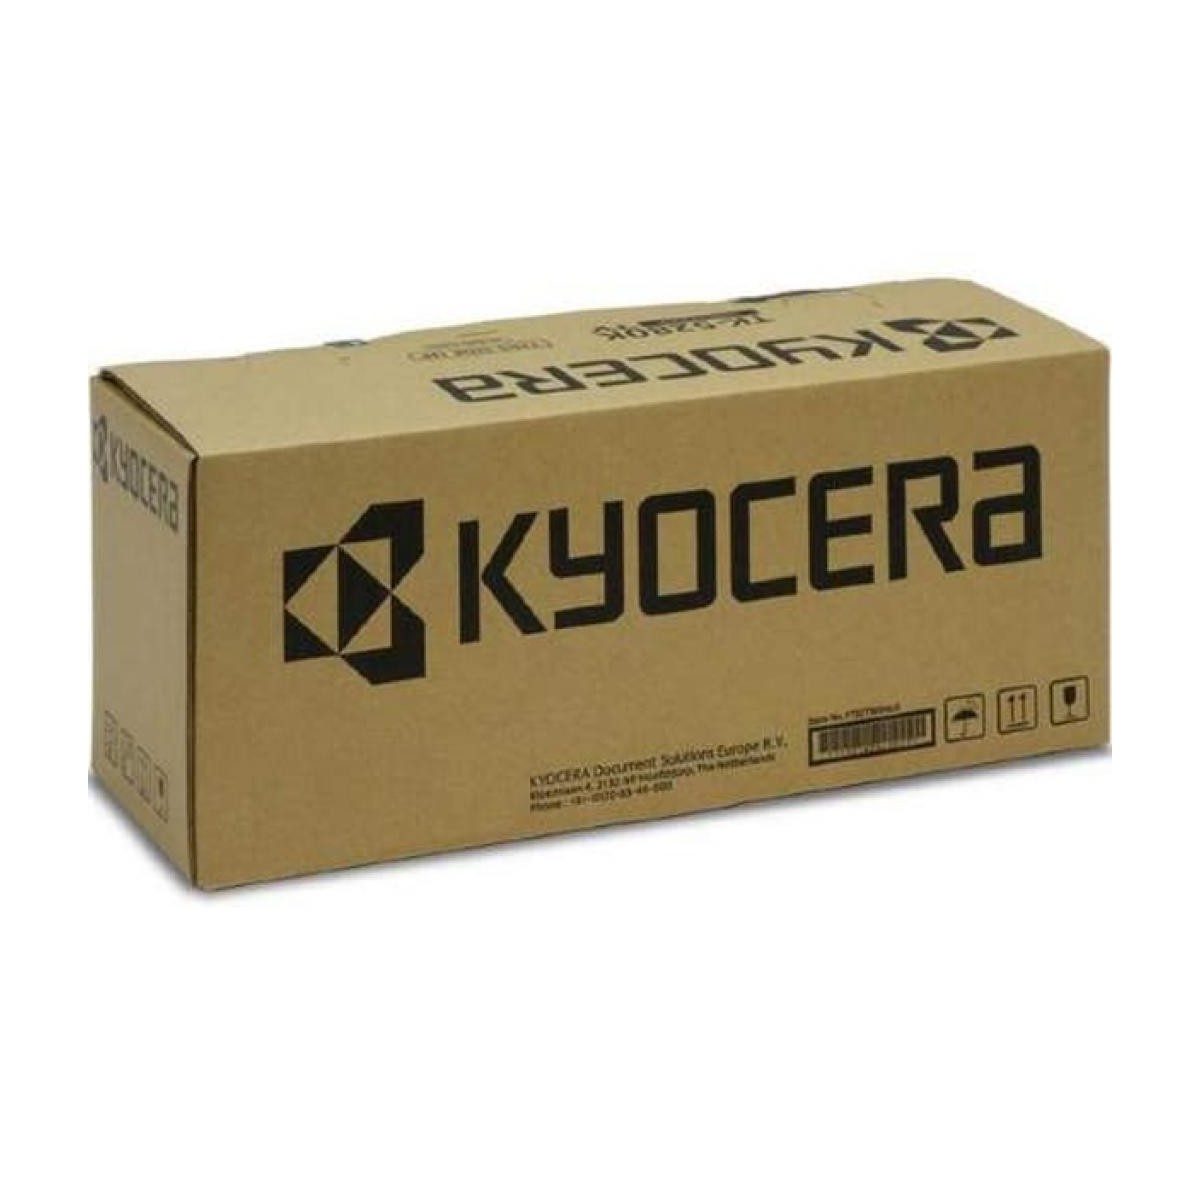 Kyocera MK 810A - Maintenance Kit